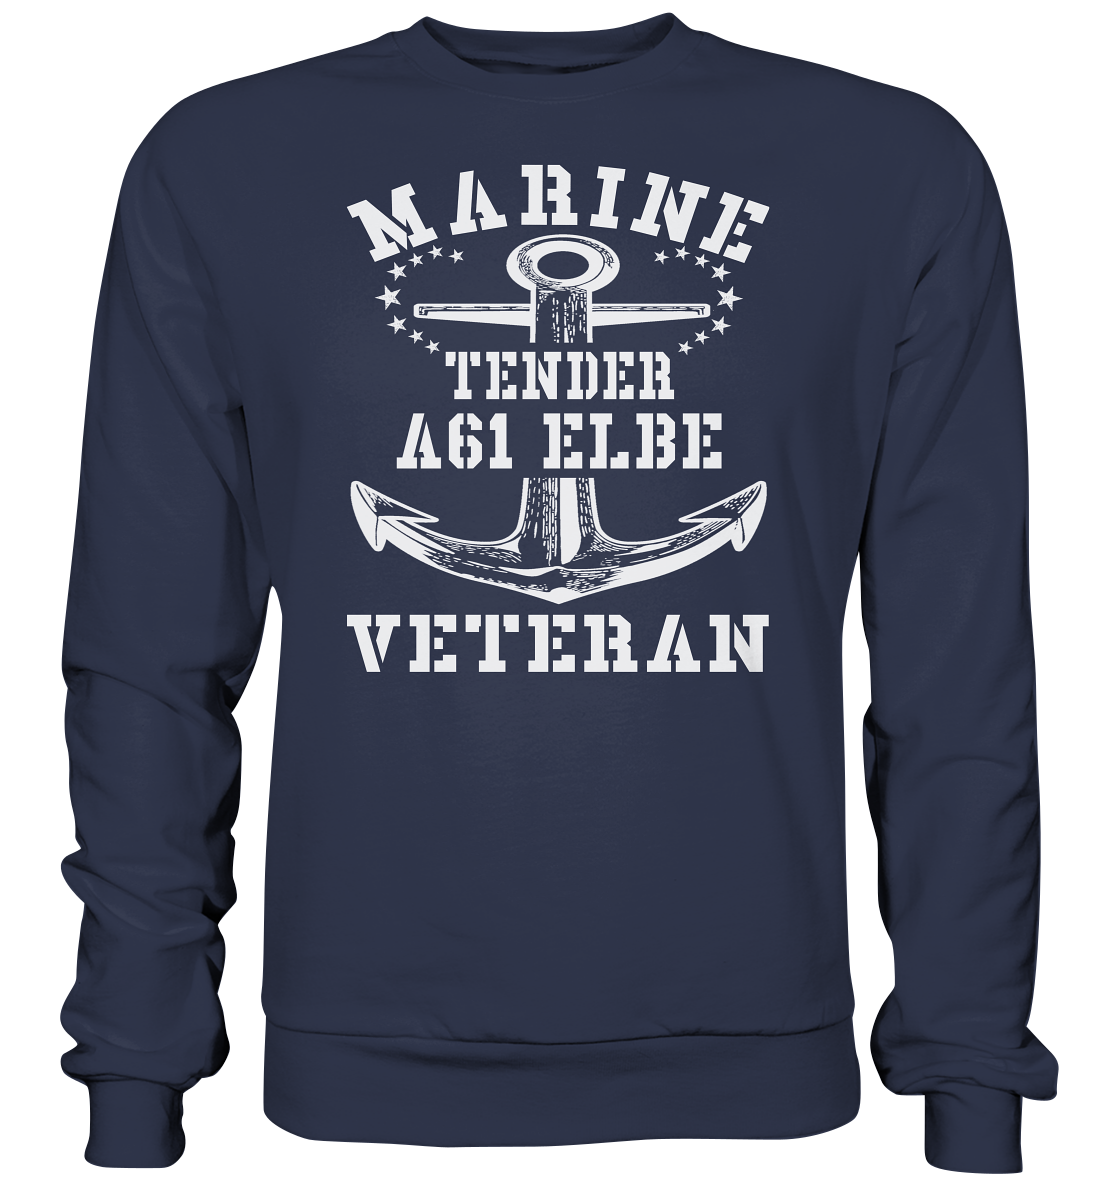 Tender A61 ELBE Marine Veteran - Premium Sweatshirt